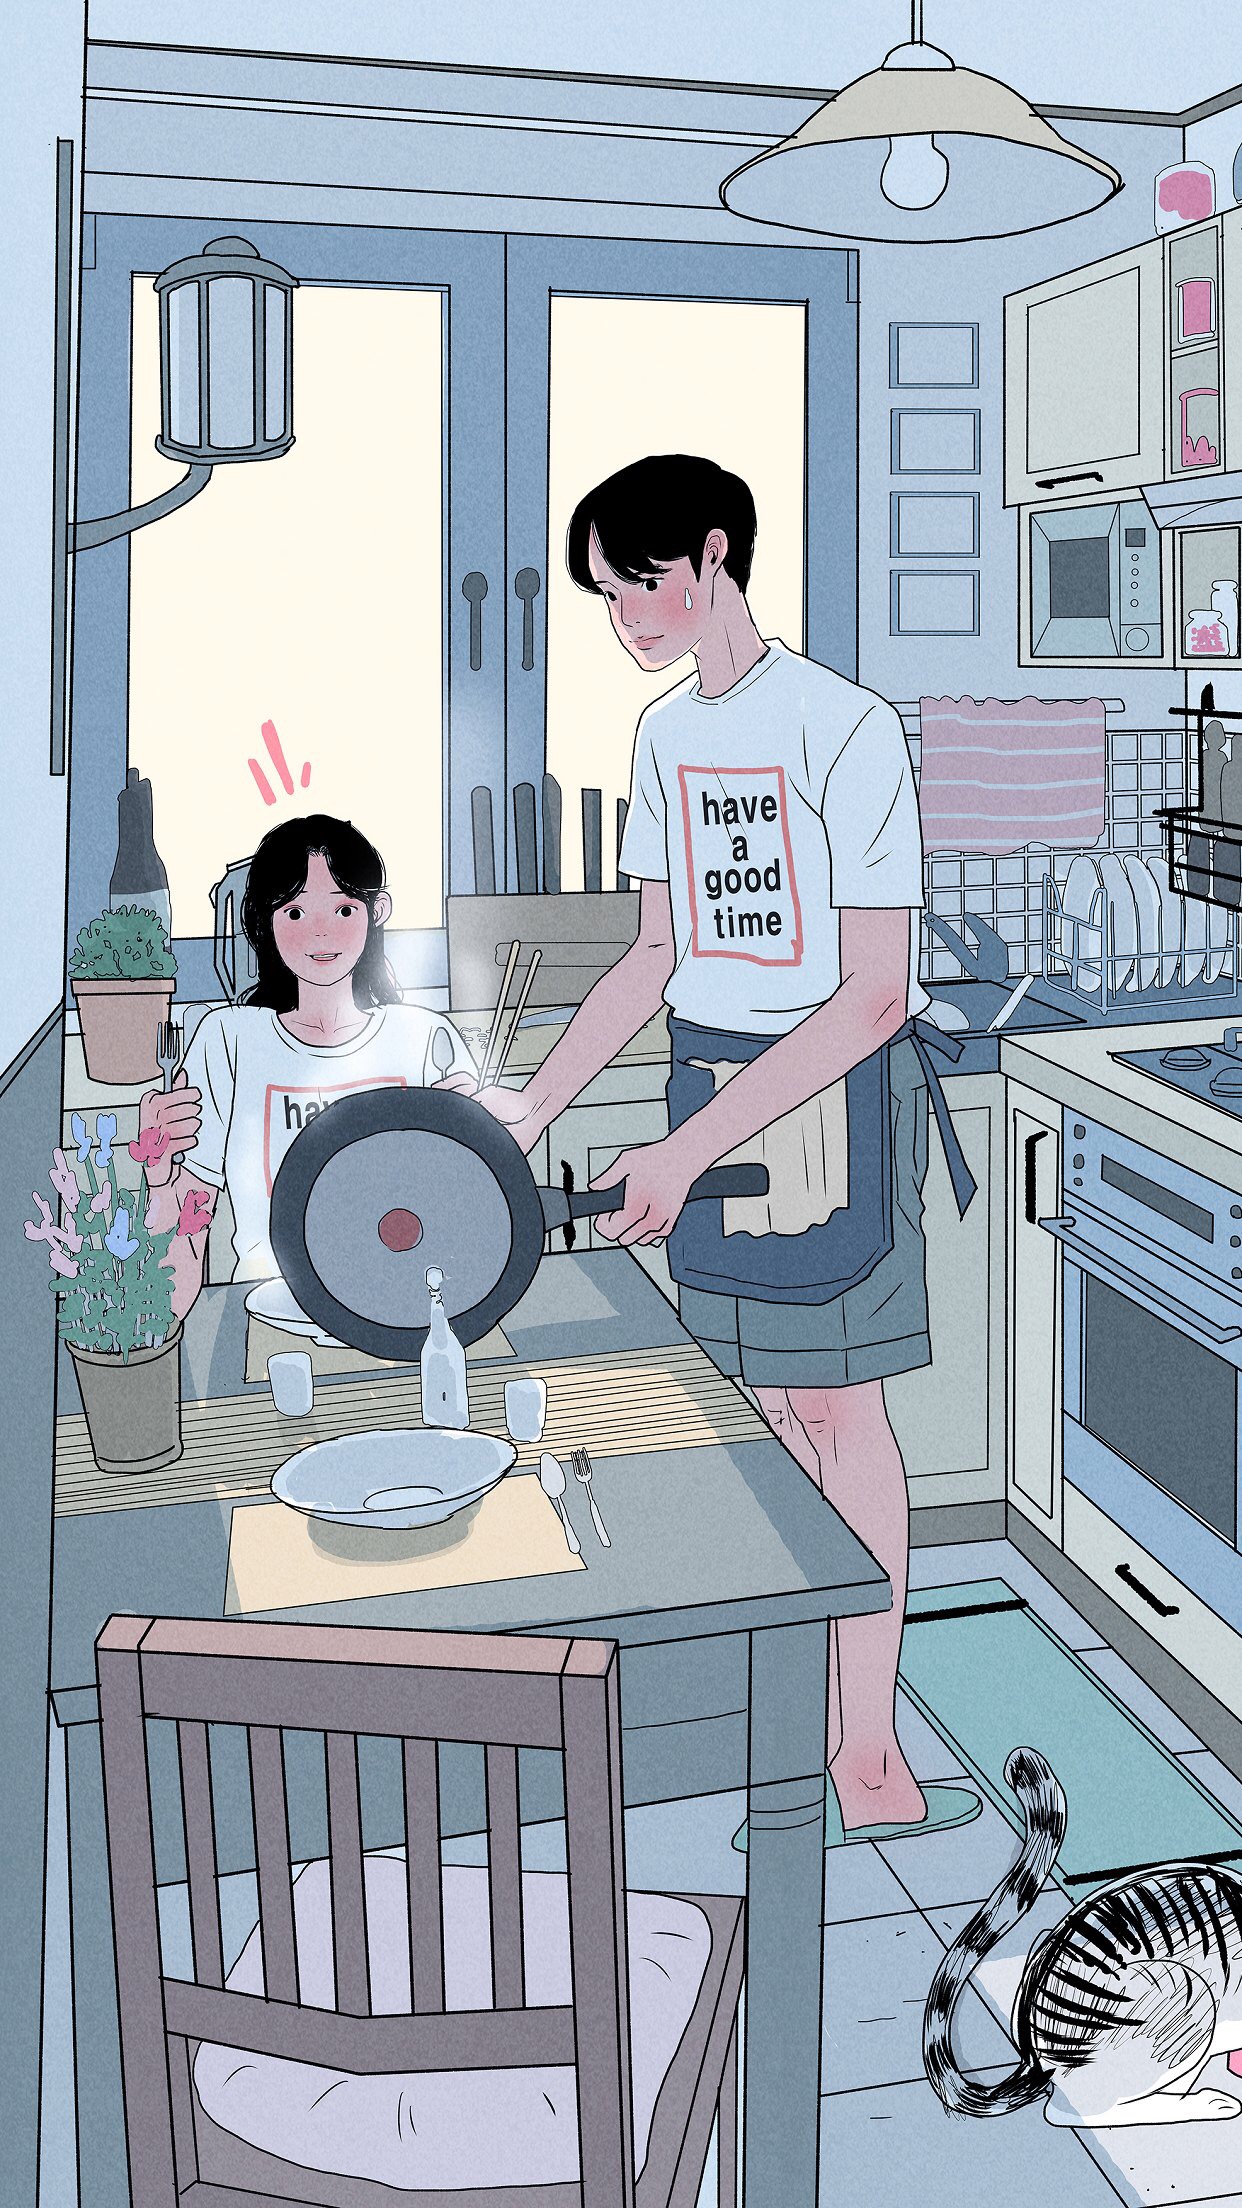 动漫壁纸 - 情侣套图 插画 素材 ins 韩系 … - 堆糖，美图壁纸兴趣社区